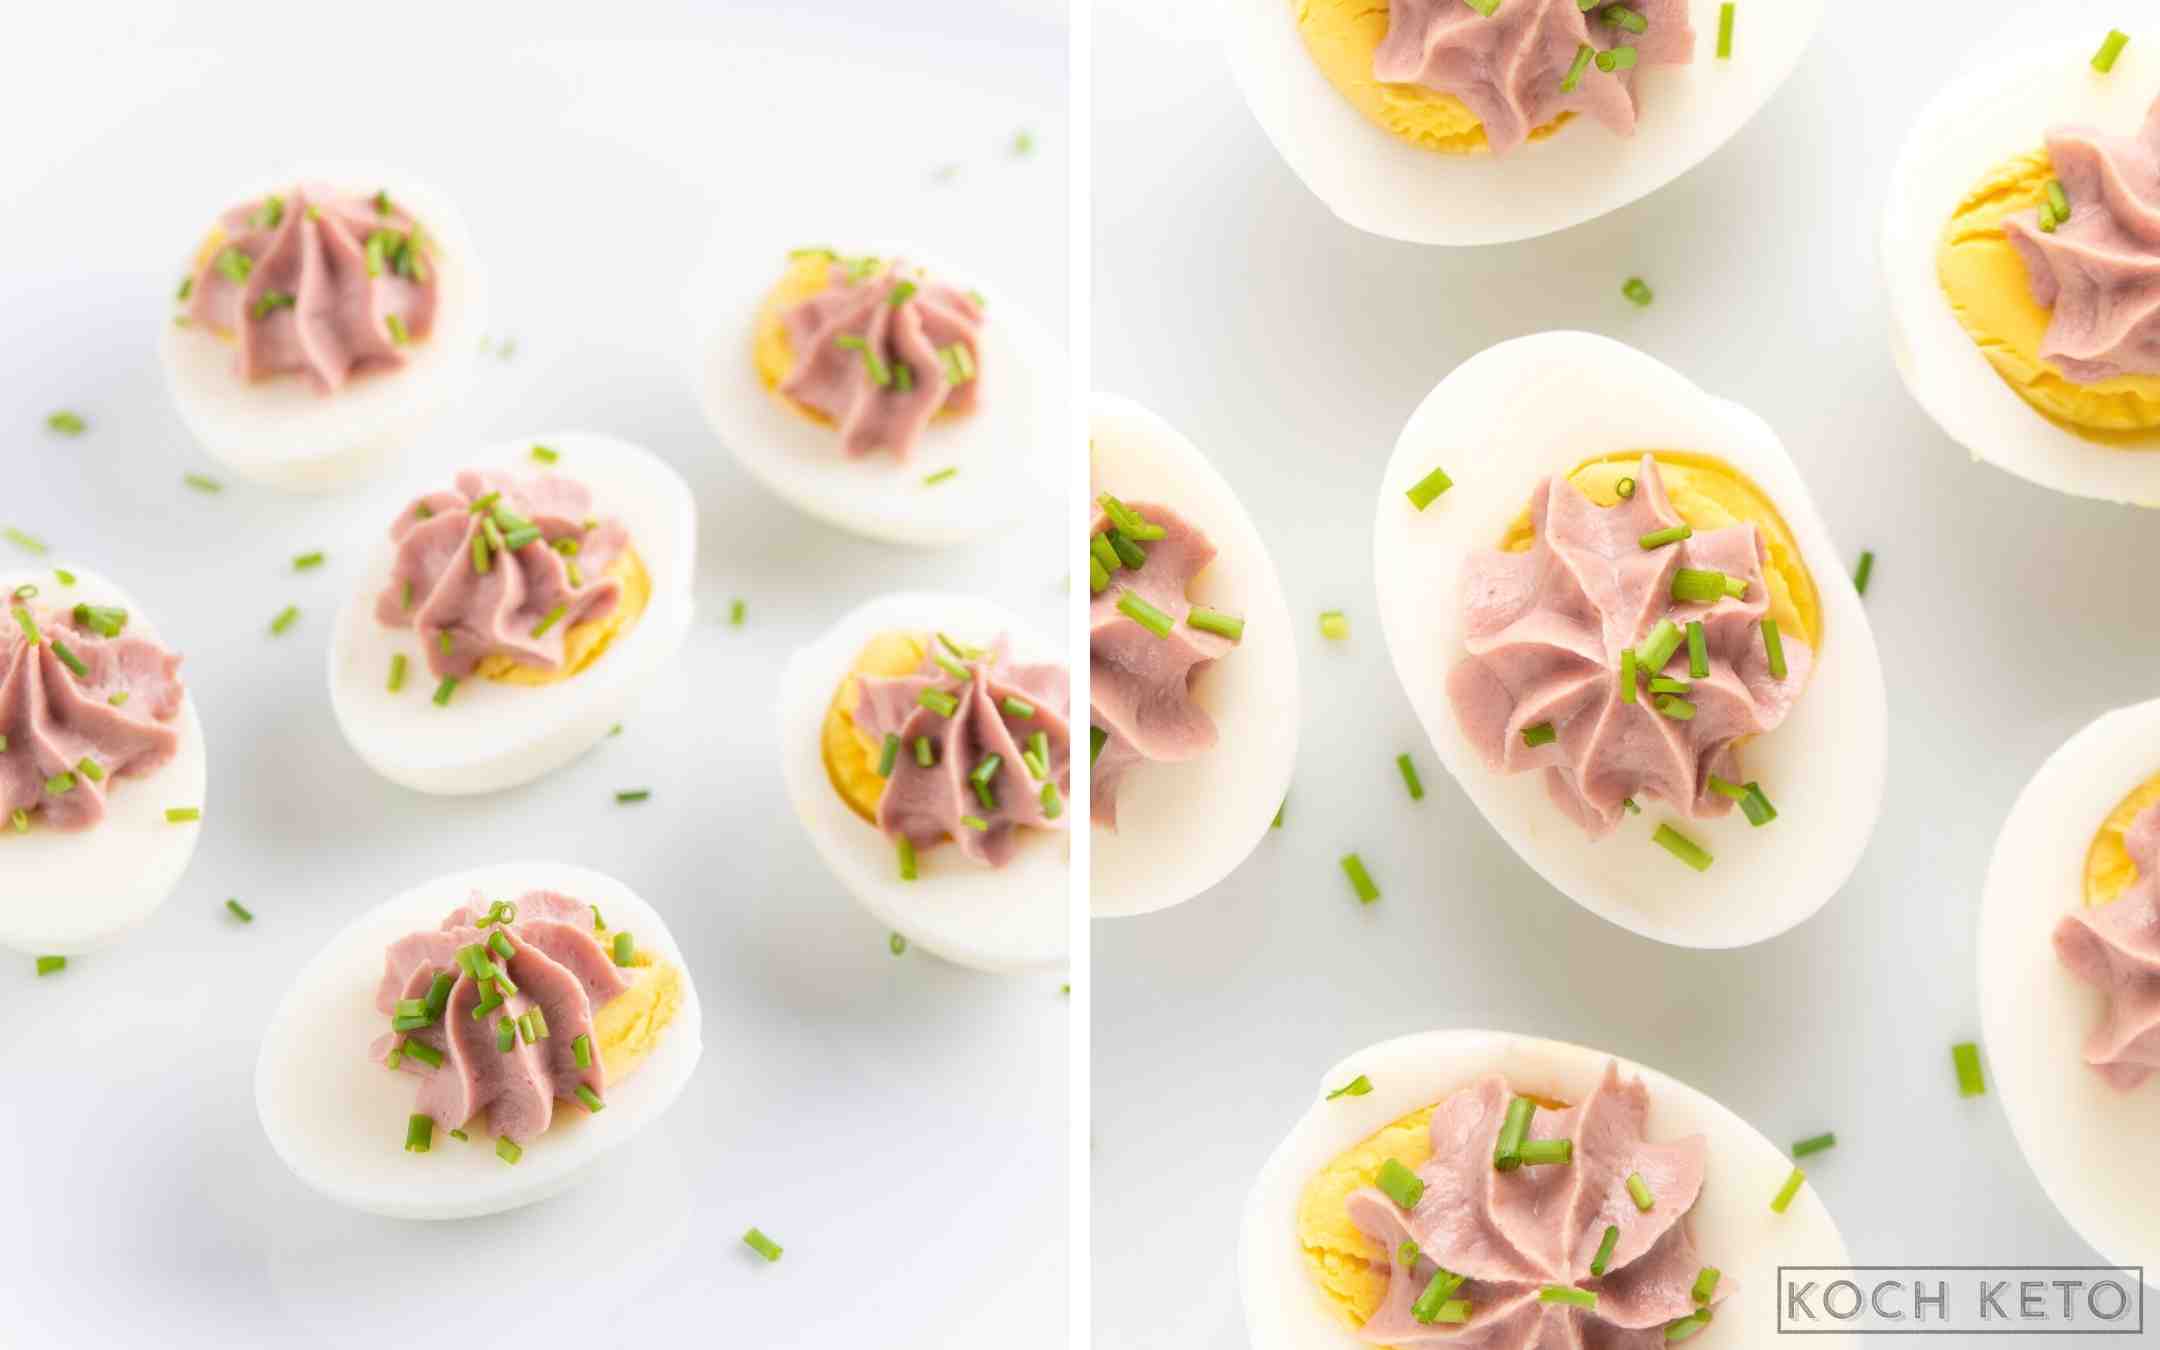 Nährstoffbombe & Keto Snack zum Abnehmen ohne Kohlenhydrate: Eier mit Leberwurst Desktop Image Collage